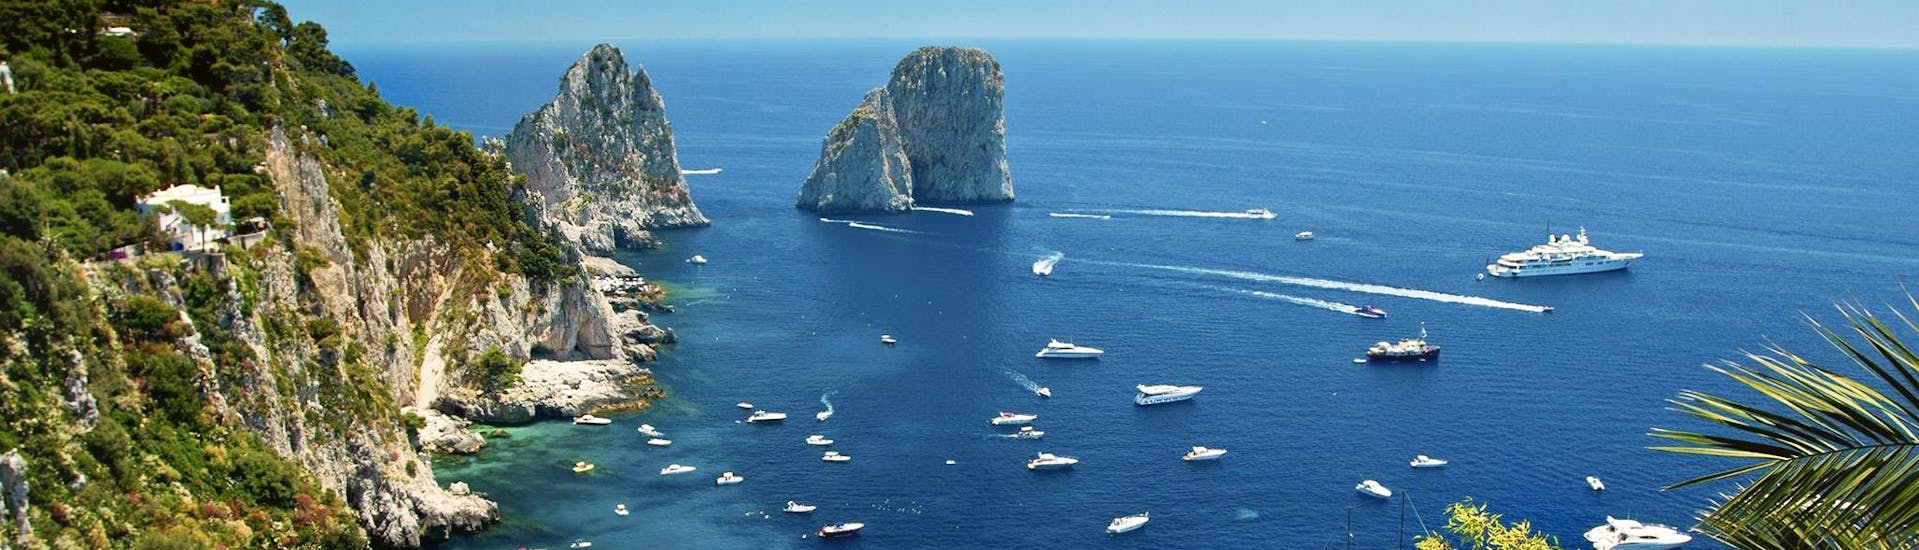 Luftaufnahme der Faraglioni, aufgenommen während Bootstour rund um Capri mit Halt an der Blauen Grotte mit HP Travel Capri.